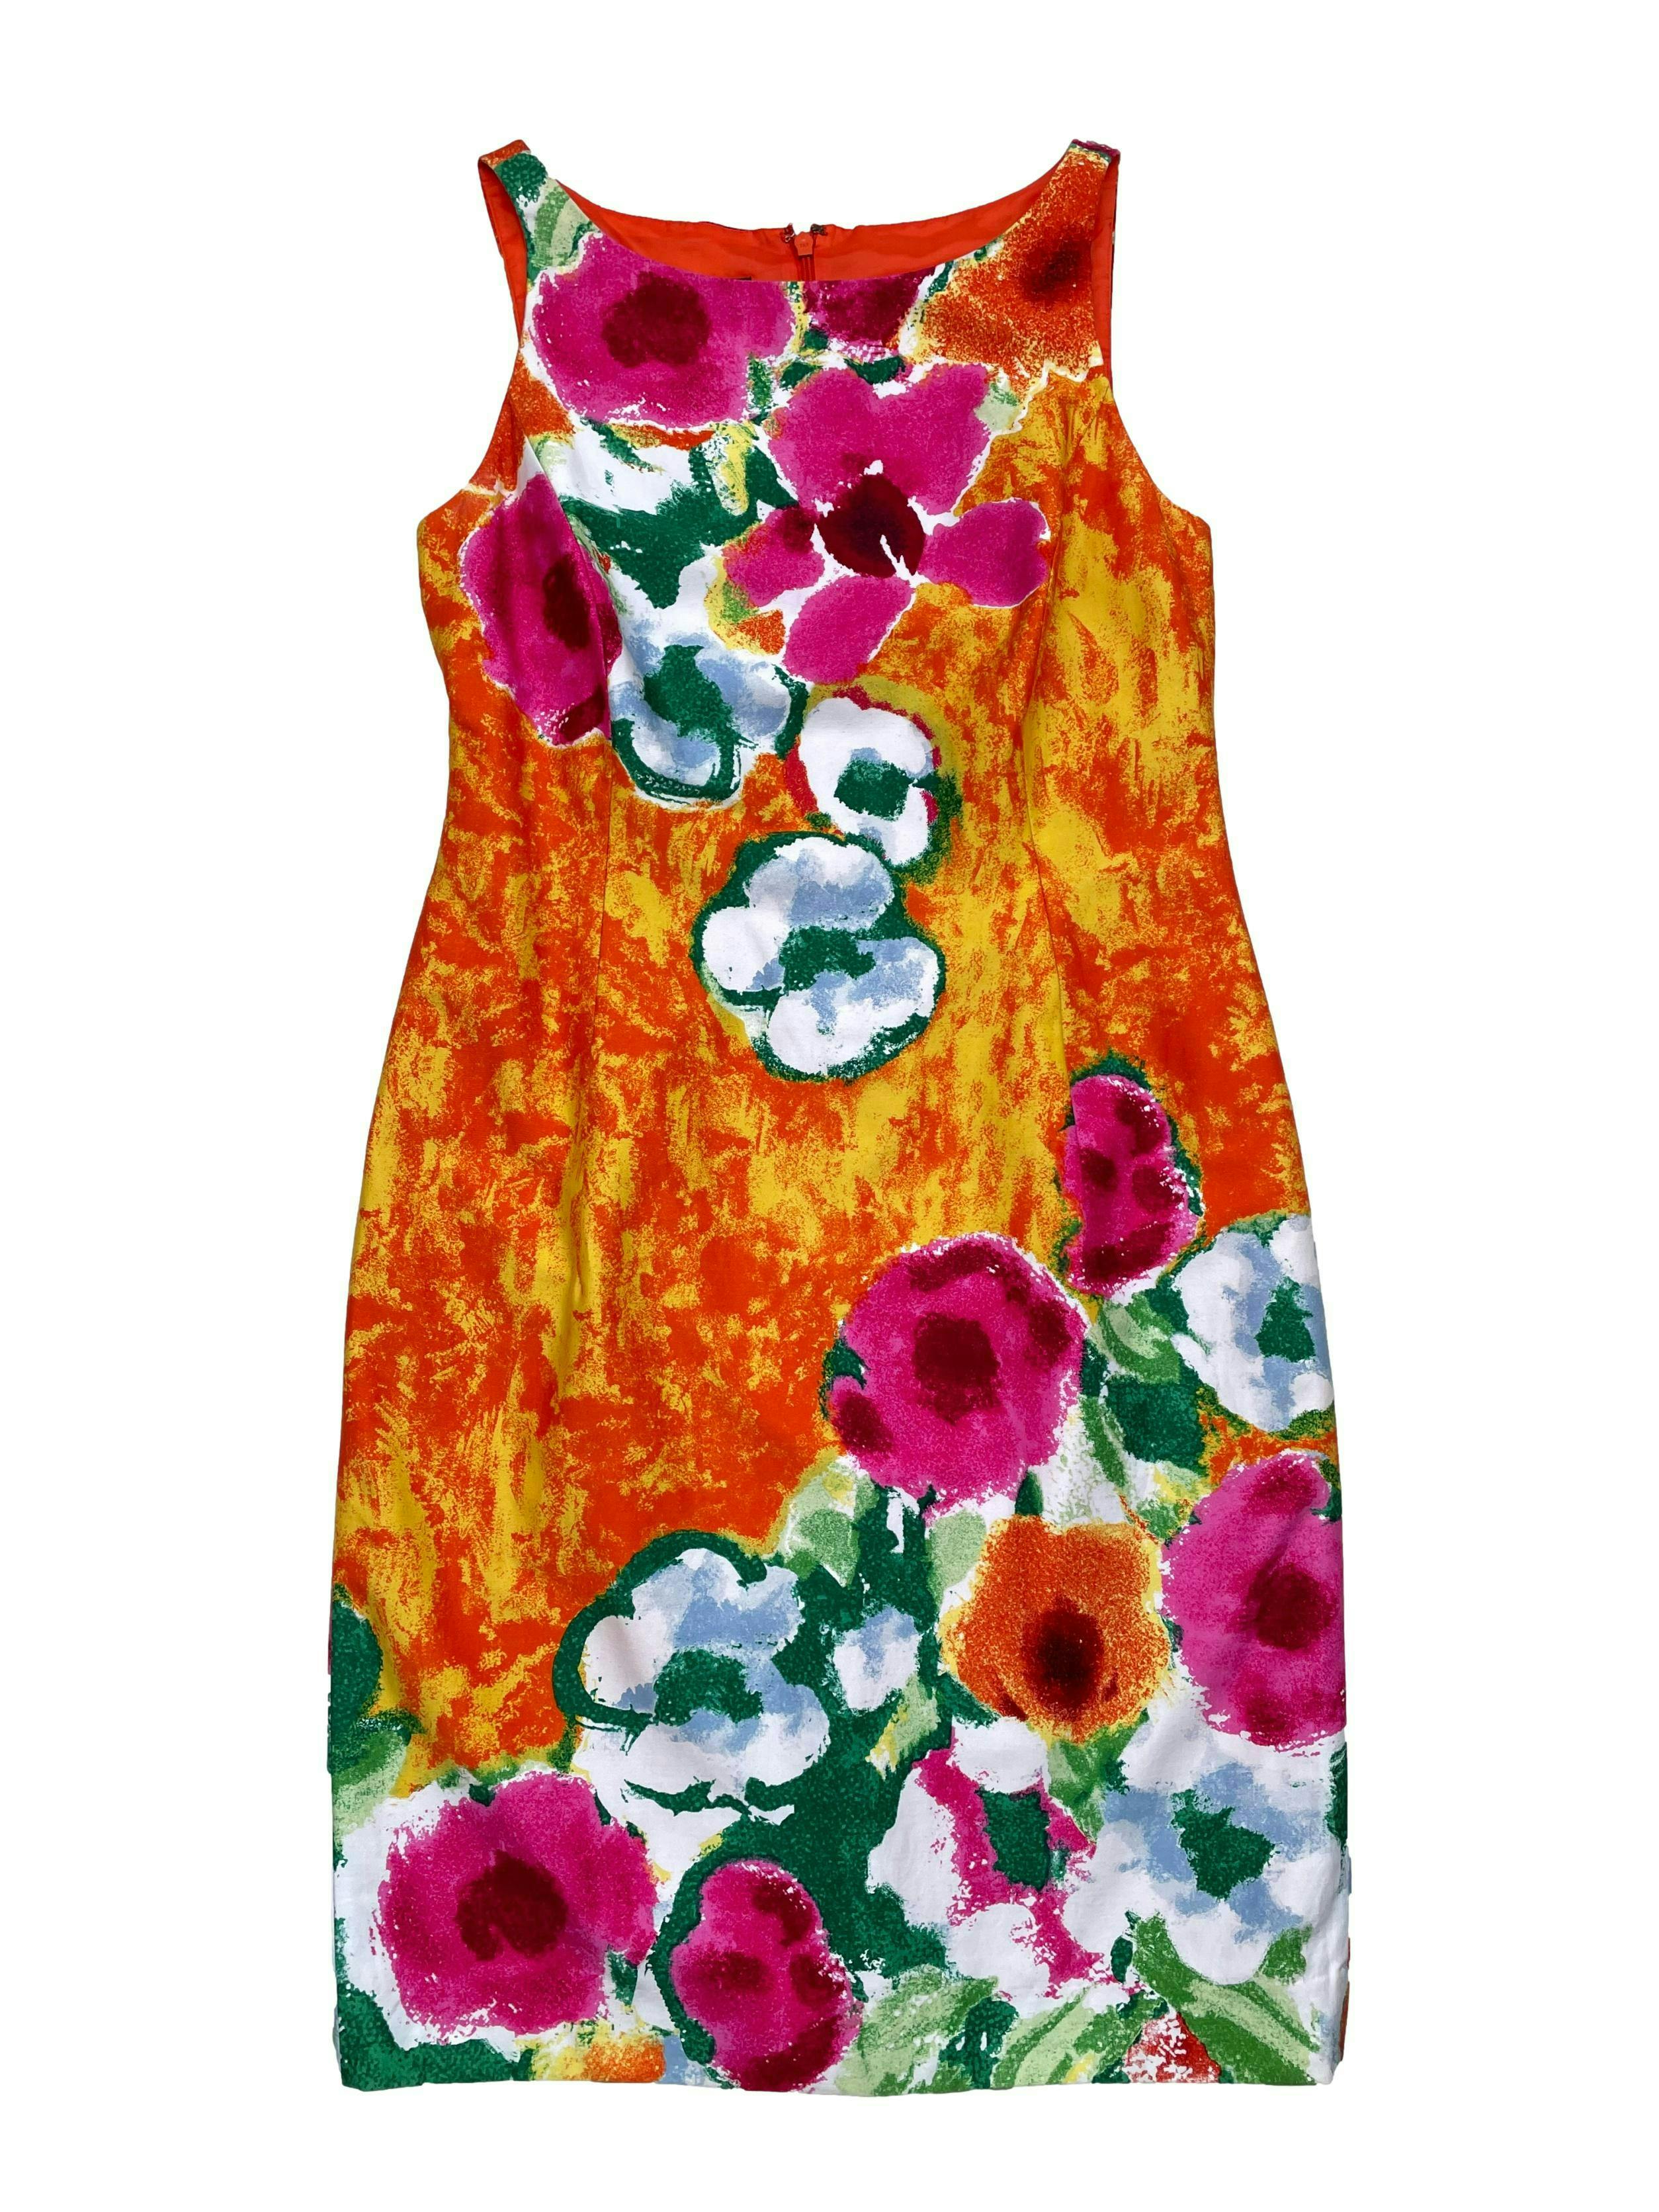 Vestido Jones New York de colores con flores tipo acuarela, 97% algodón, forrado con cierre en la espalda. Busto 90cm Cintura 76cm Largo 92cm. Precio original S/ 300